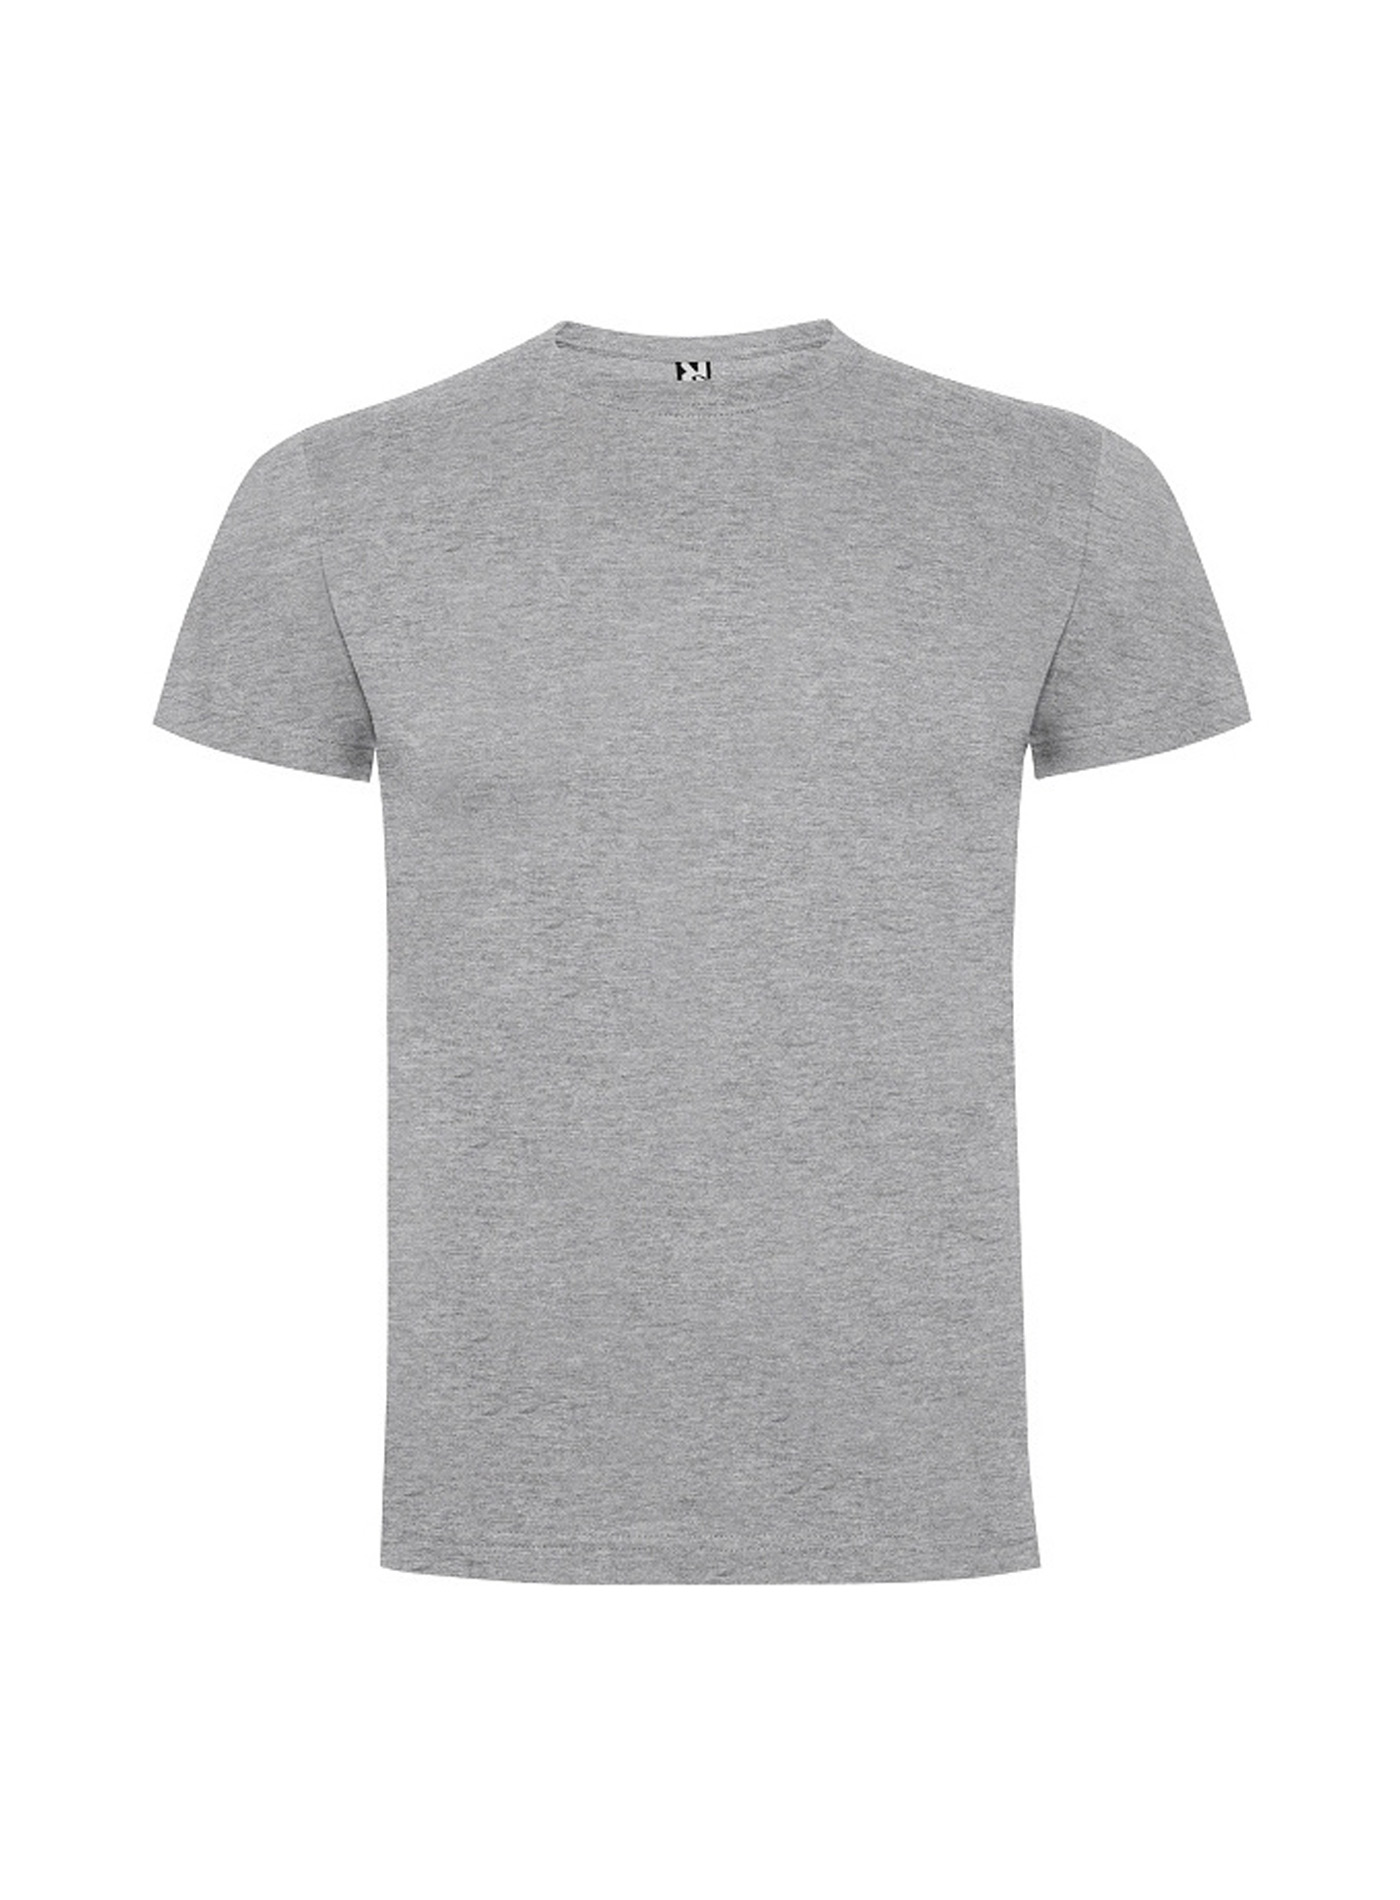 Dětské tričko Roly Dogo premium - Světle šedý melír 9-10